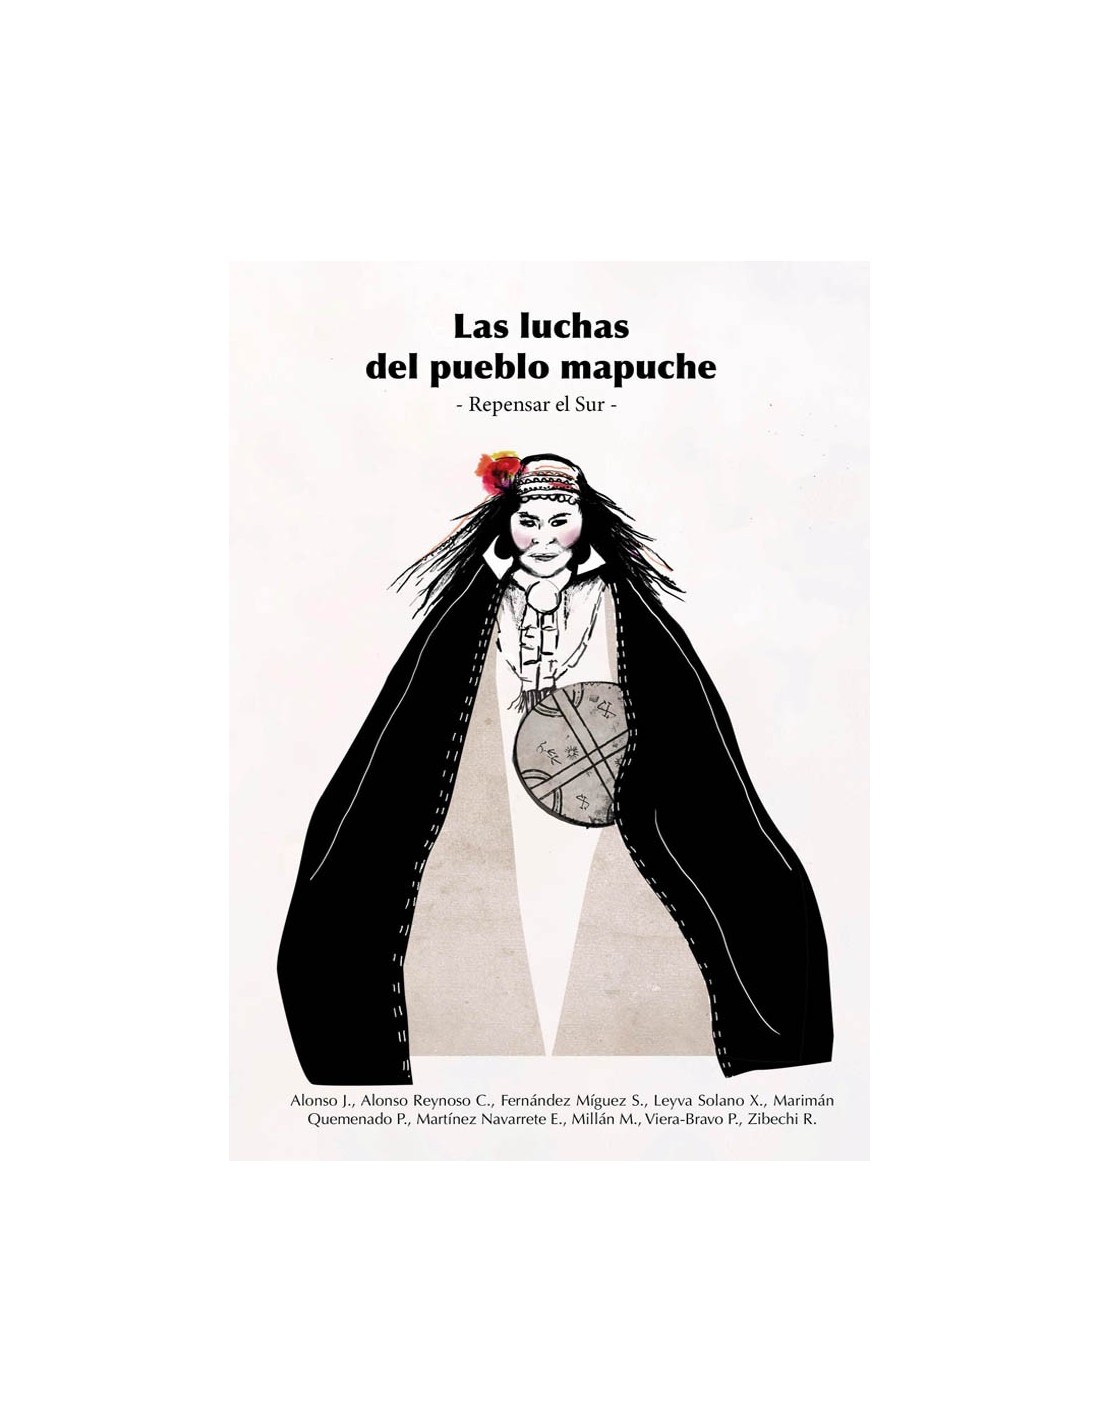 Imagen de portada del libro Las luchas del pueblo mapuche